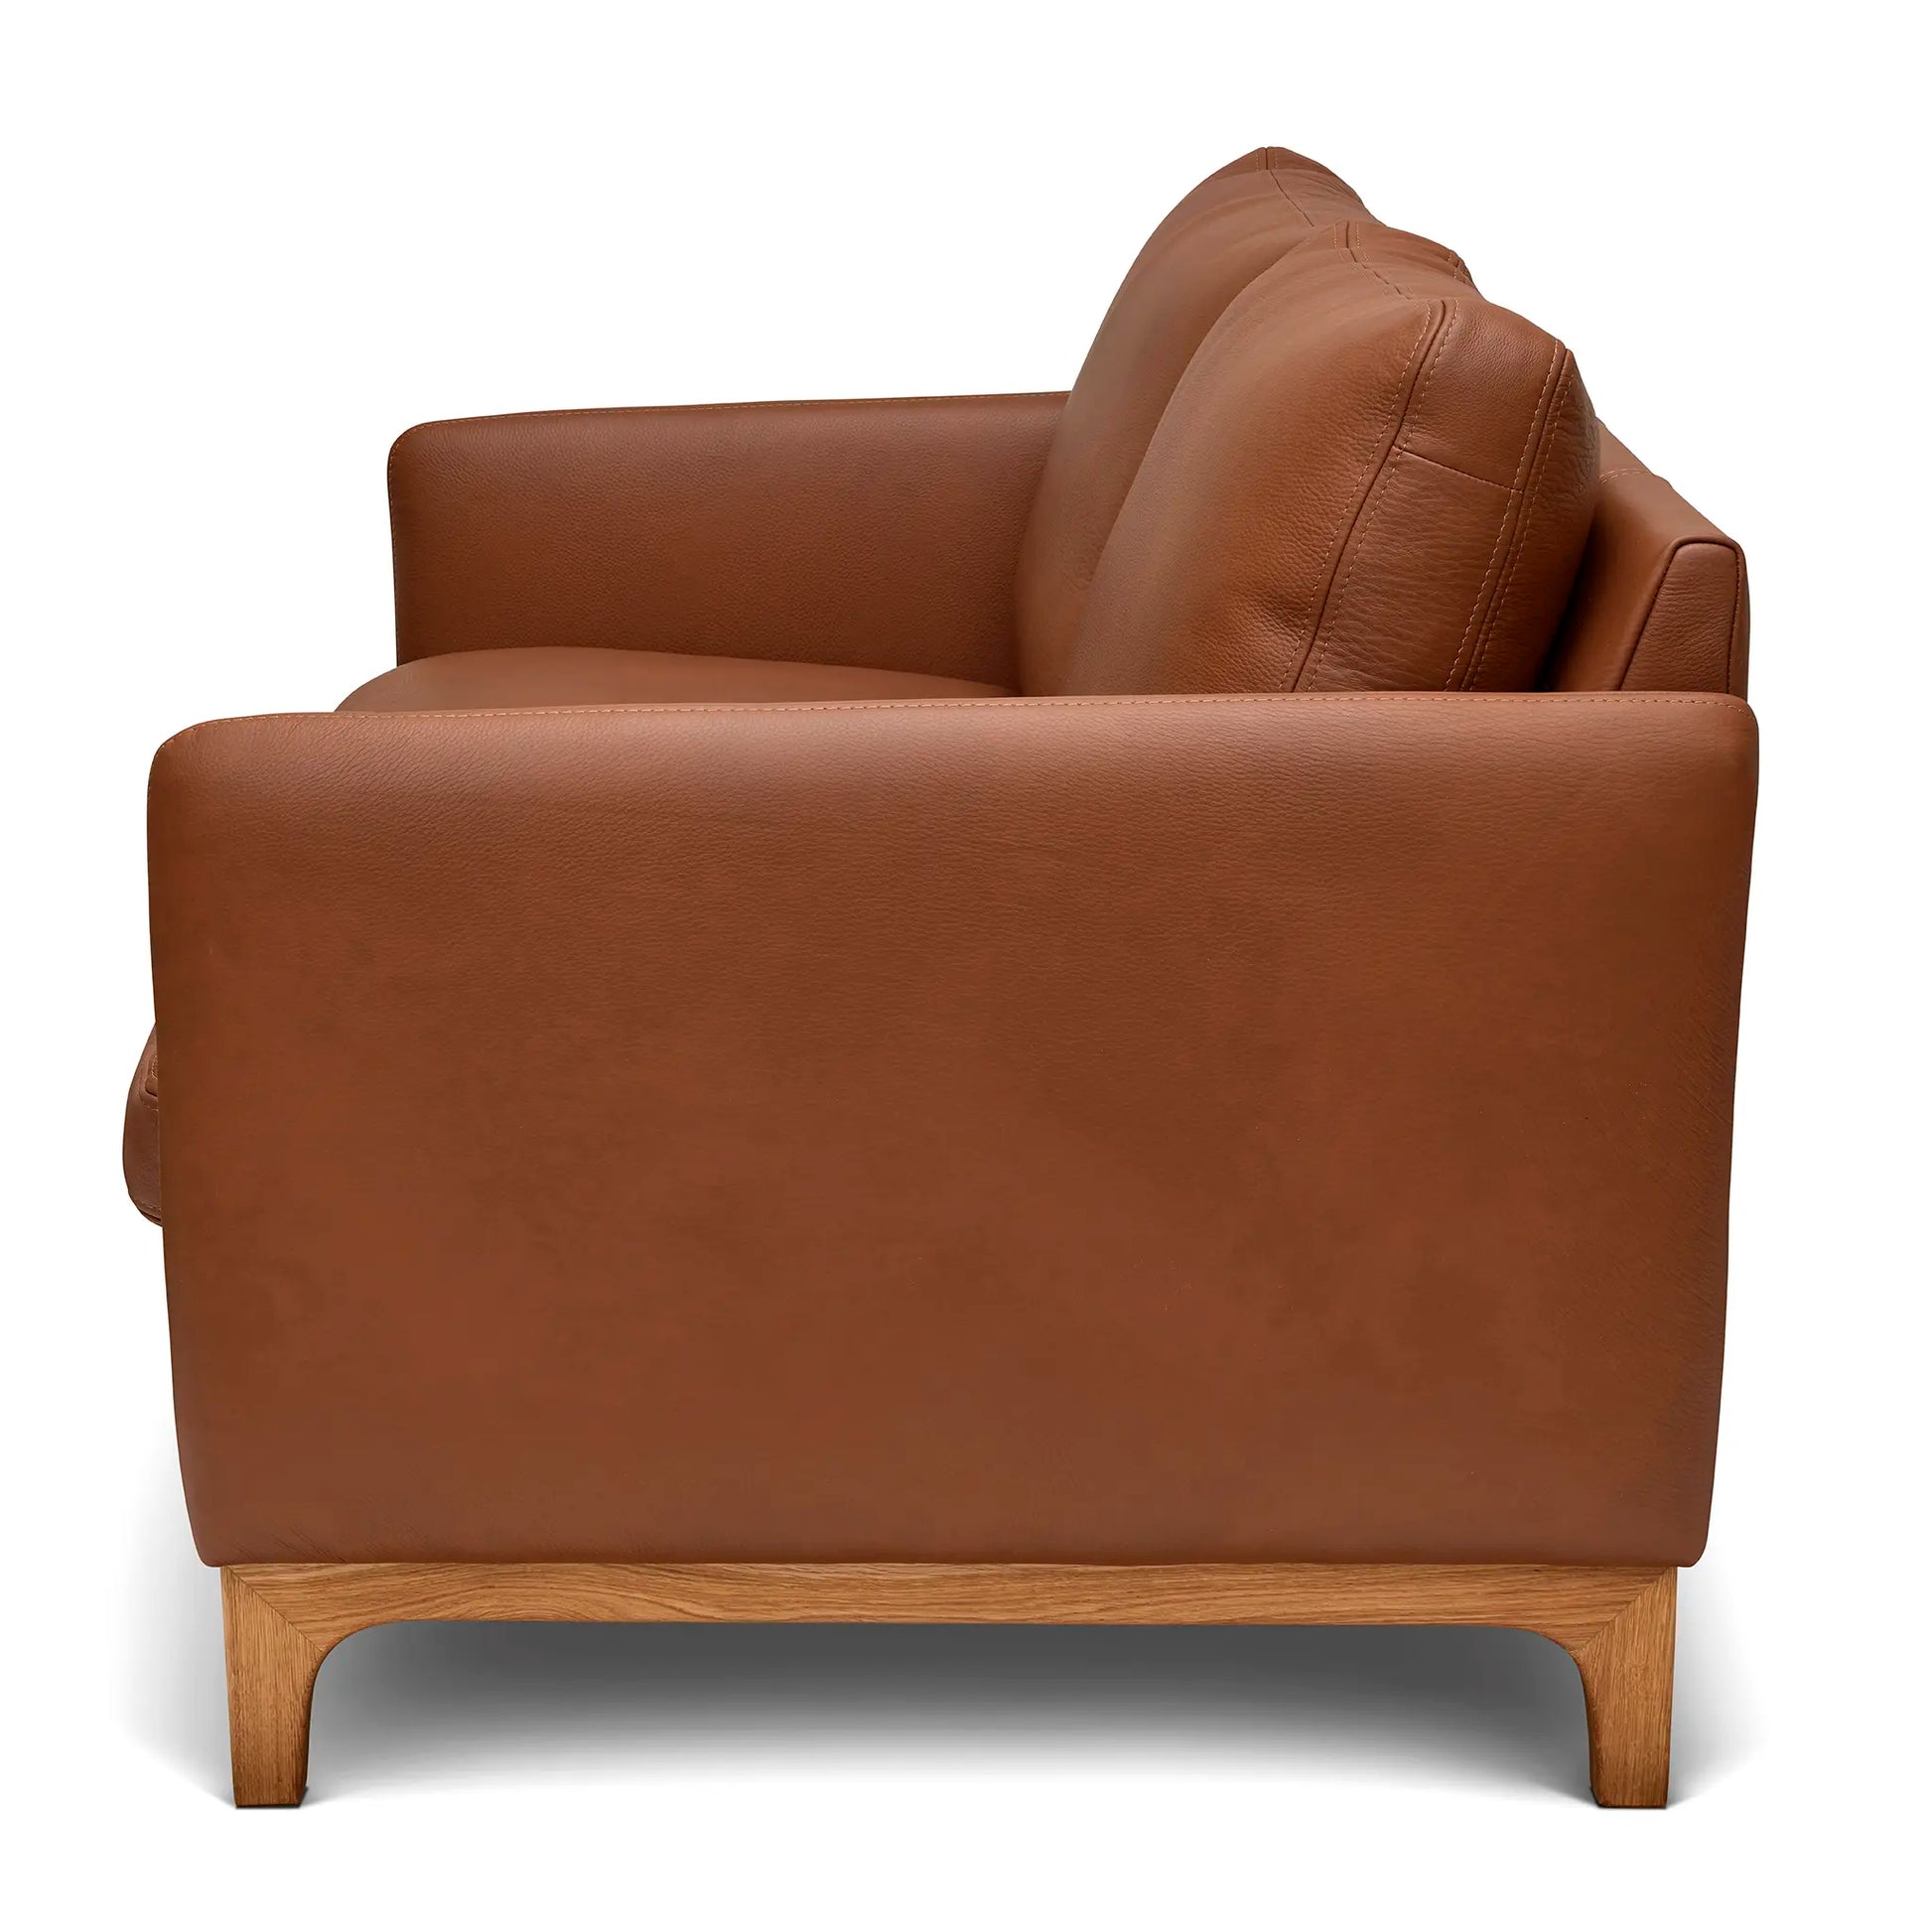 Detaljbild på en liten 2-sits soffa i brunt äkta skinn med en träram i ek